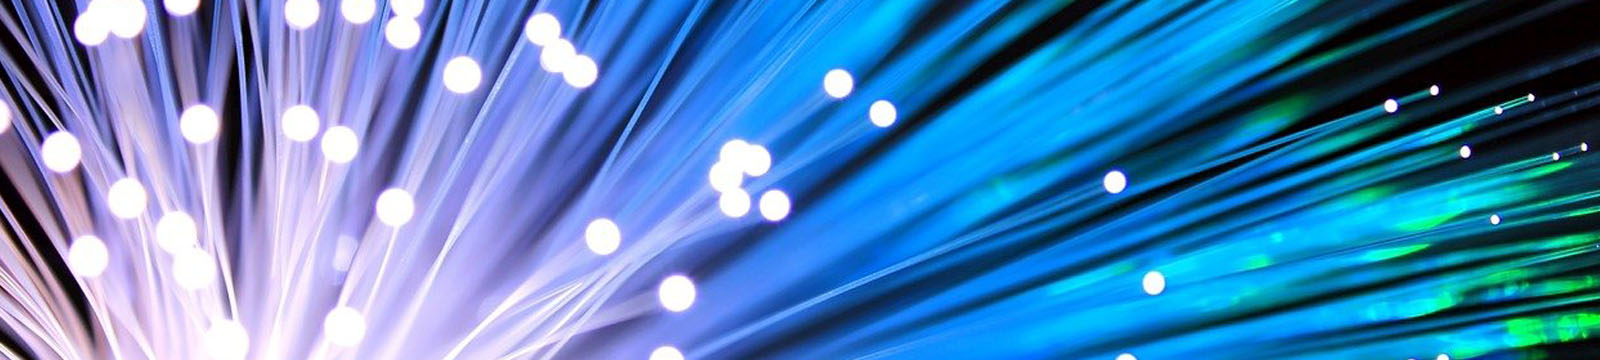 photo of fiber optic wires